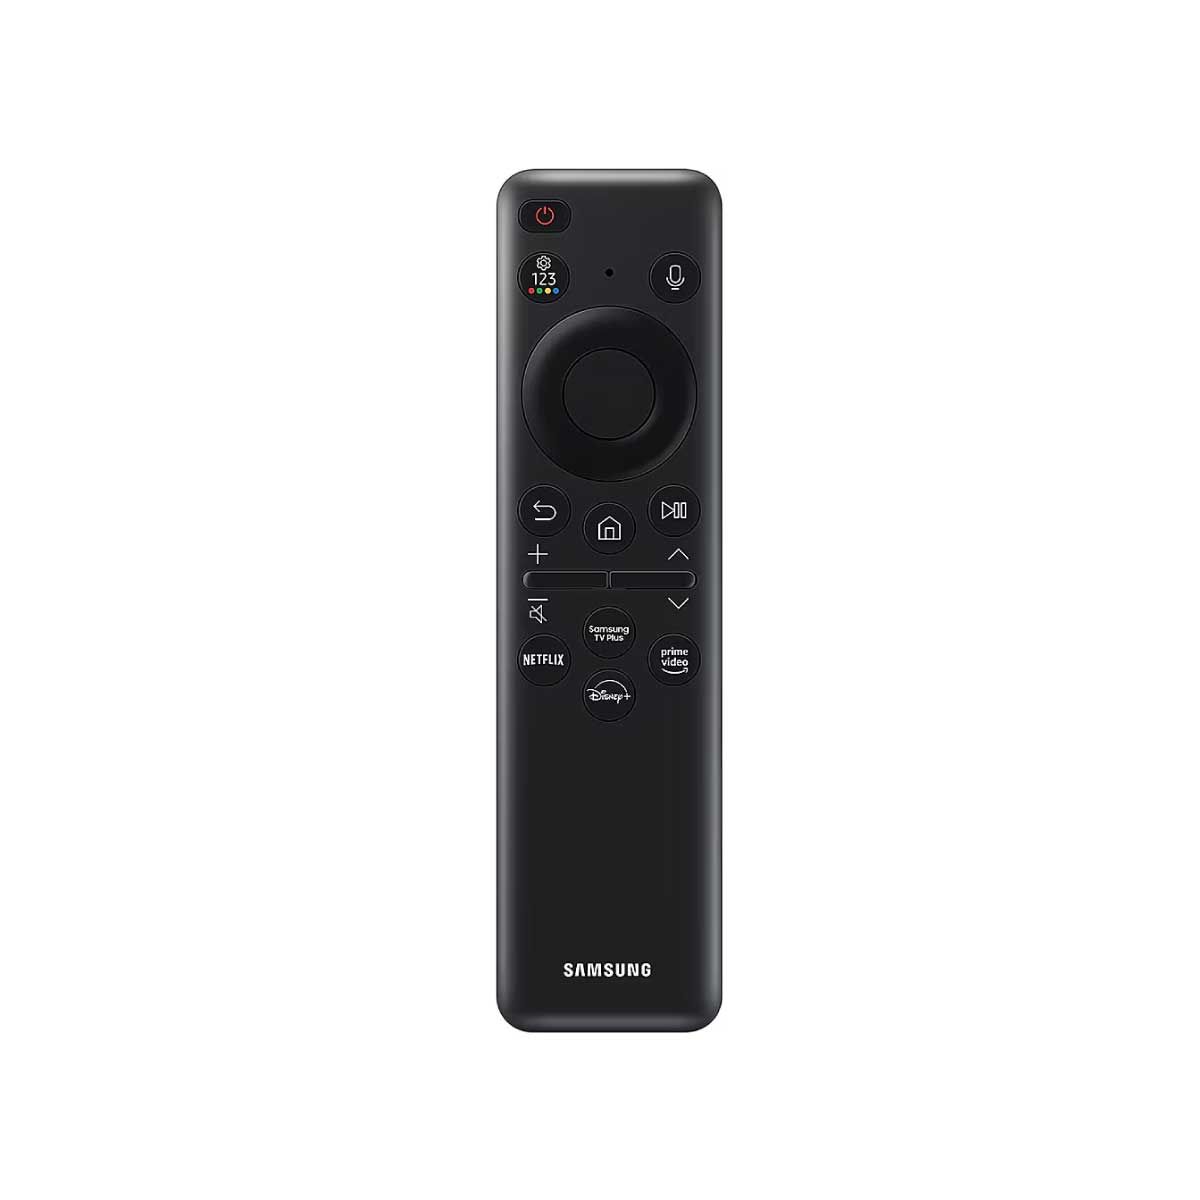 SAMSUNG LED Crystal UHD Smart TV 4K รุ่น UA43DU7700KXXT Smart One Remote ขนาด 43 นิ้ว